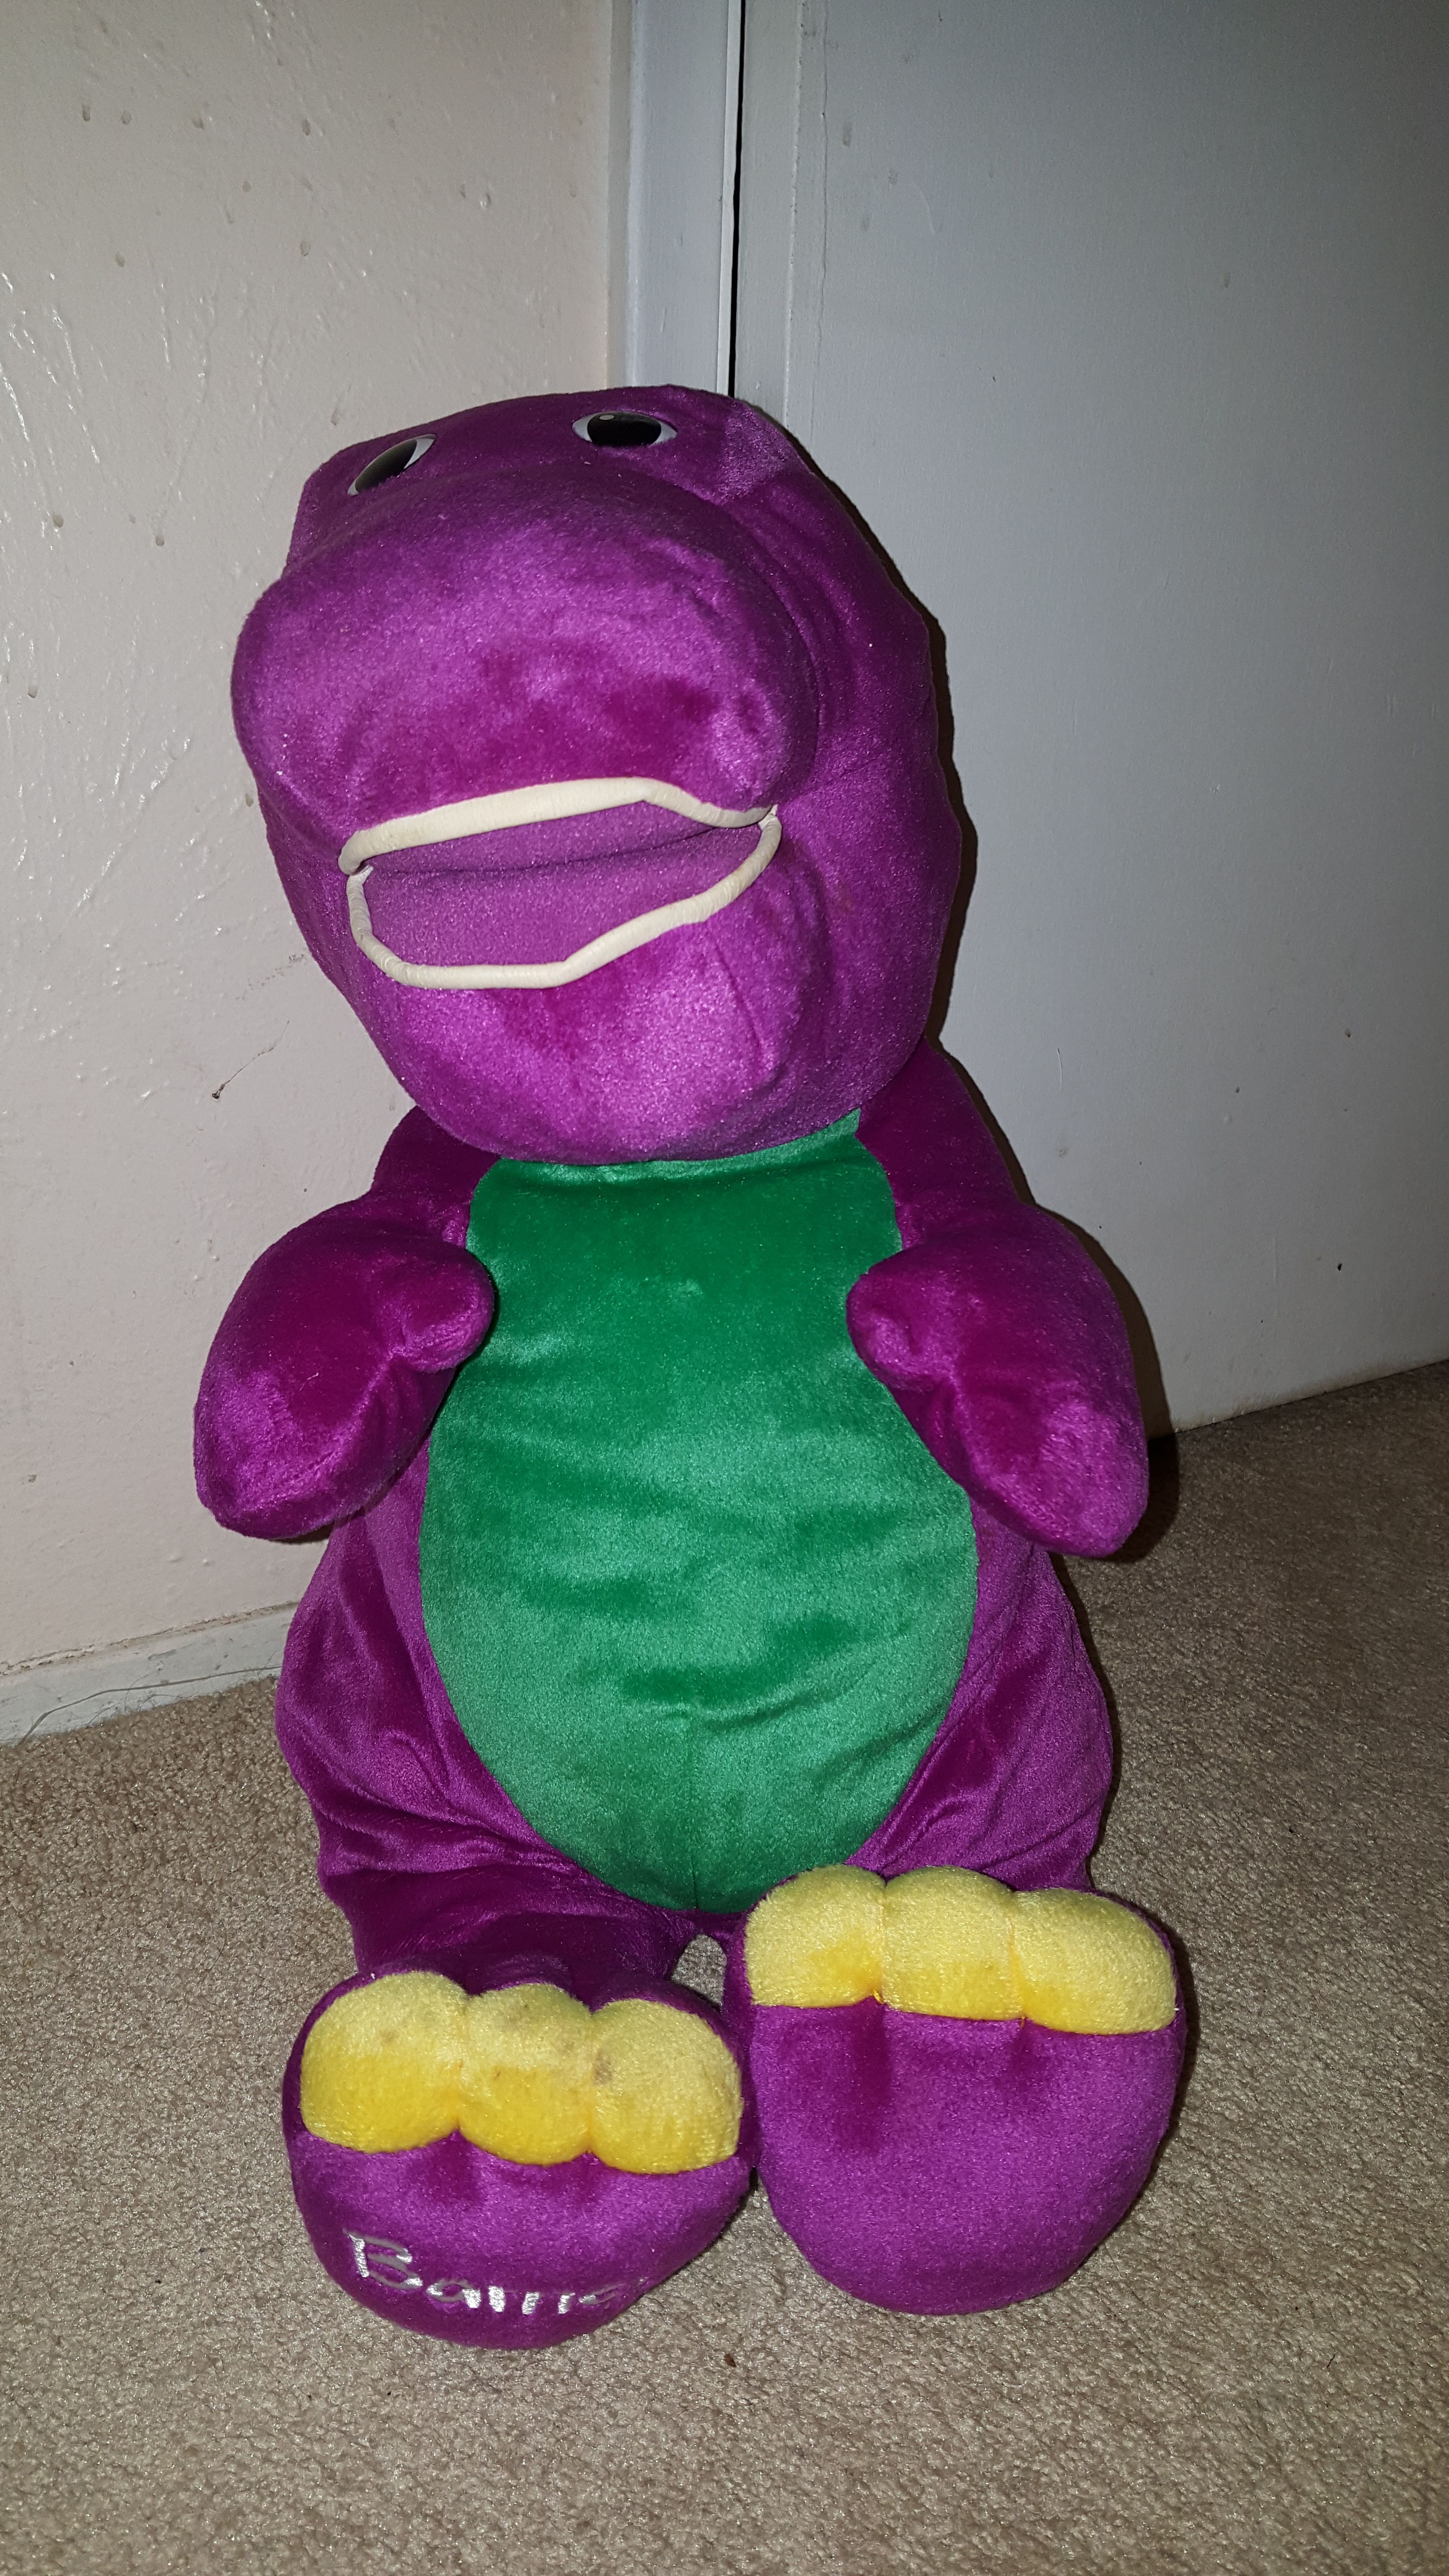 Vintage 2001 Jumbo Talking Barney 24" Plush Stuffed Animal Dinosaur